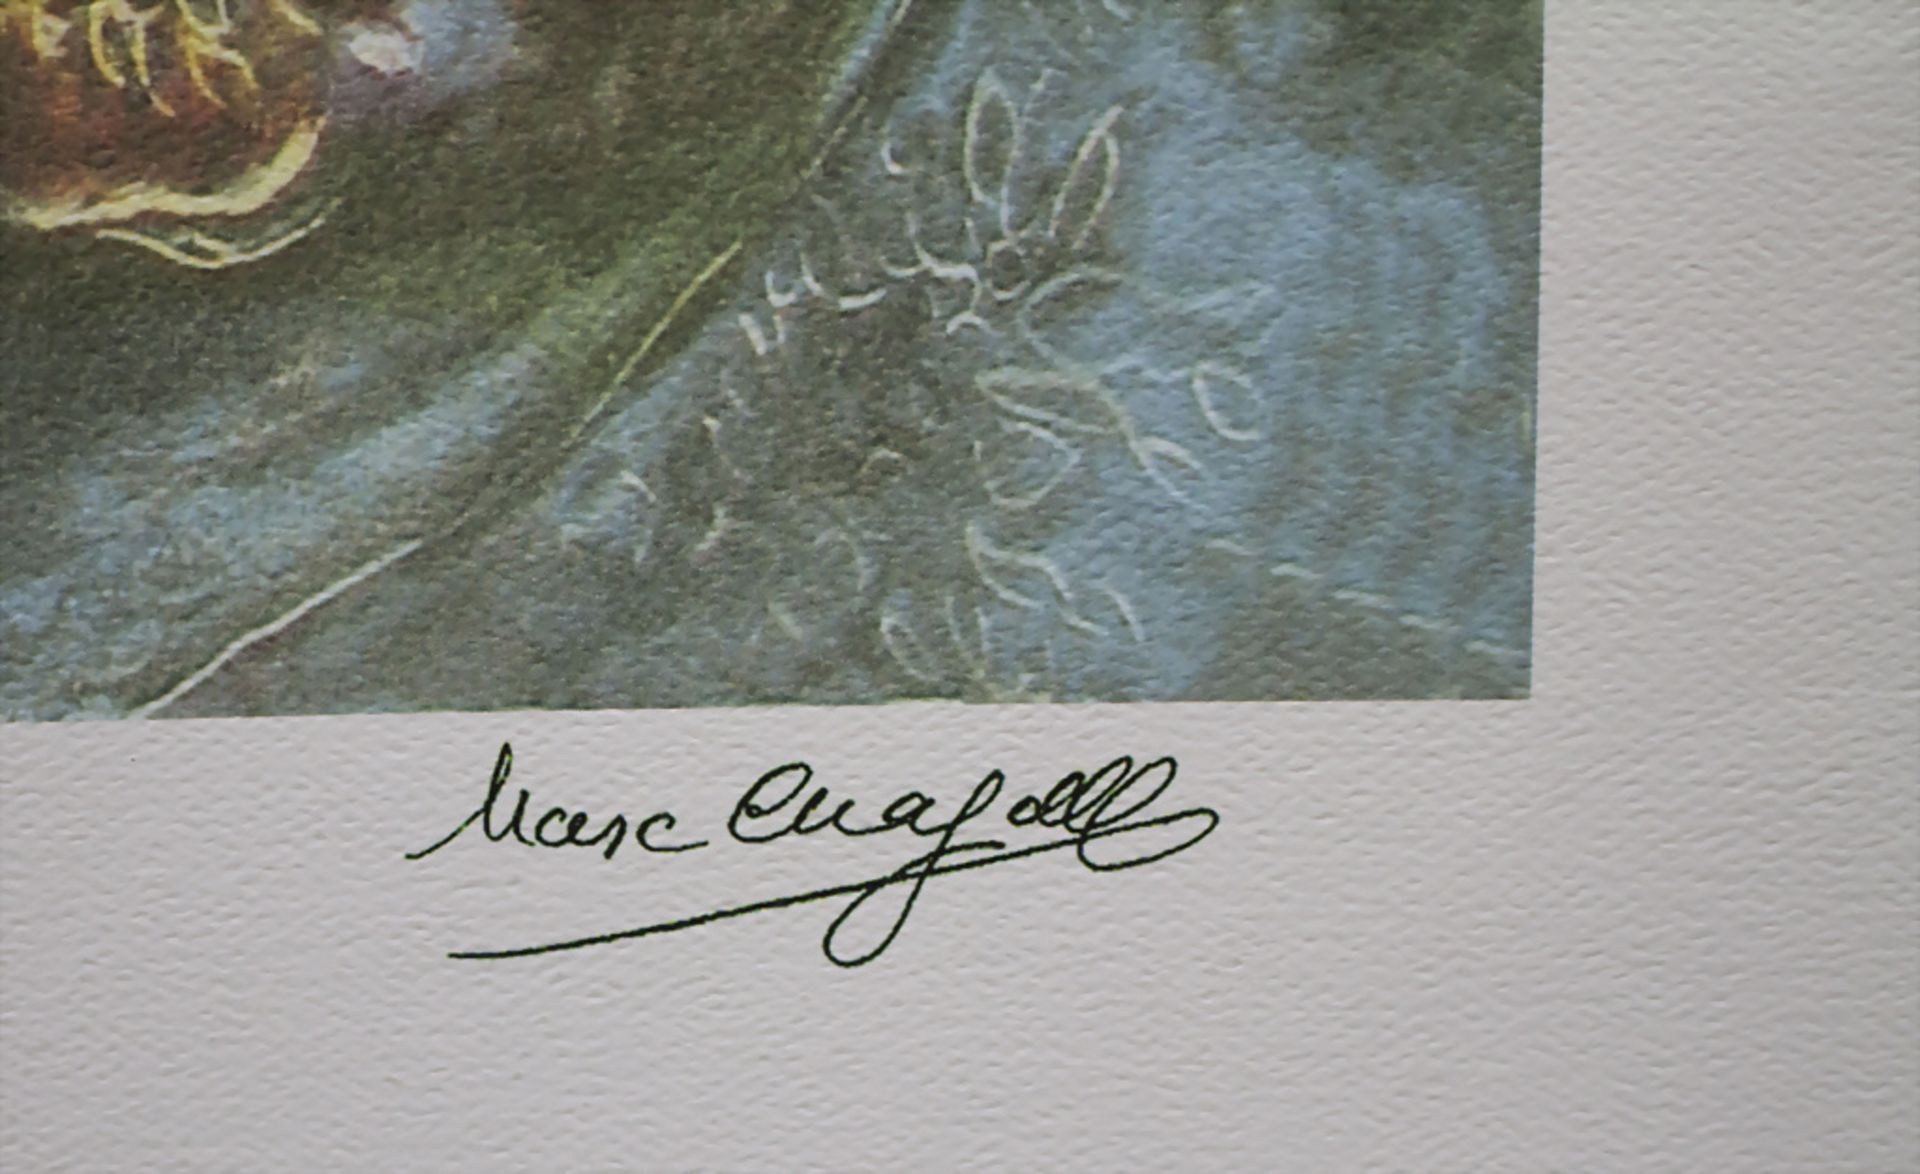 Marc CHAGALL (1887-1985), 'Bella', um 1989 - Bild 3 aus 4